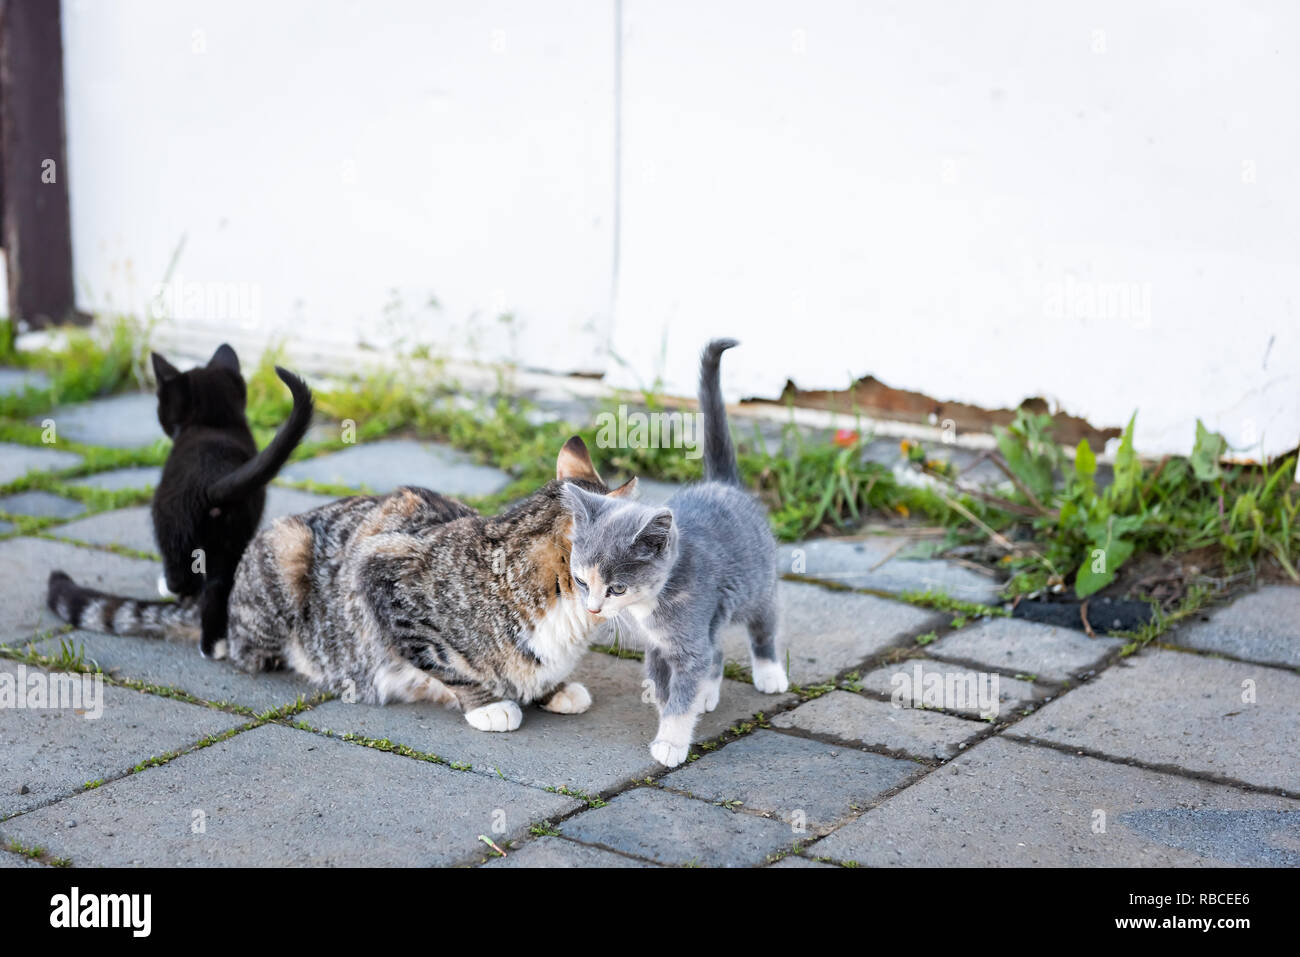 Mère Calico cat ferme errants et les petits chatons gris et noir à l'extérieur près de frottement collage farm house building sur la rue Banque D'Images